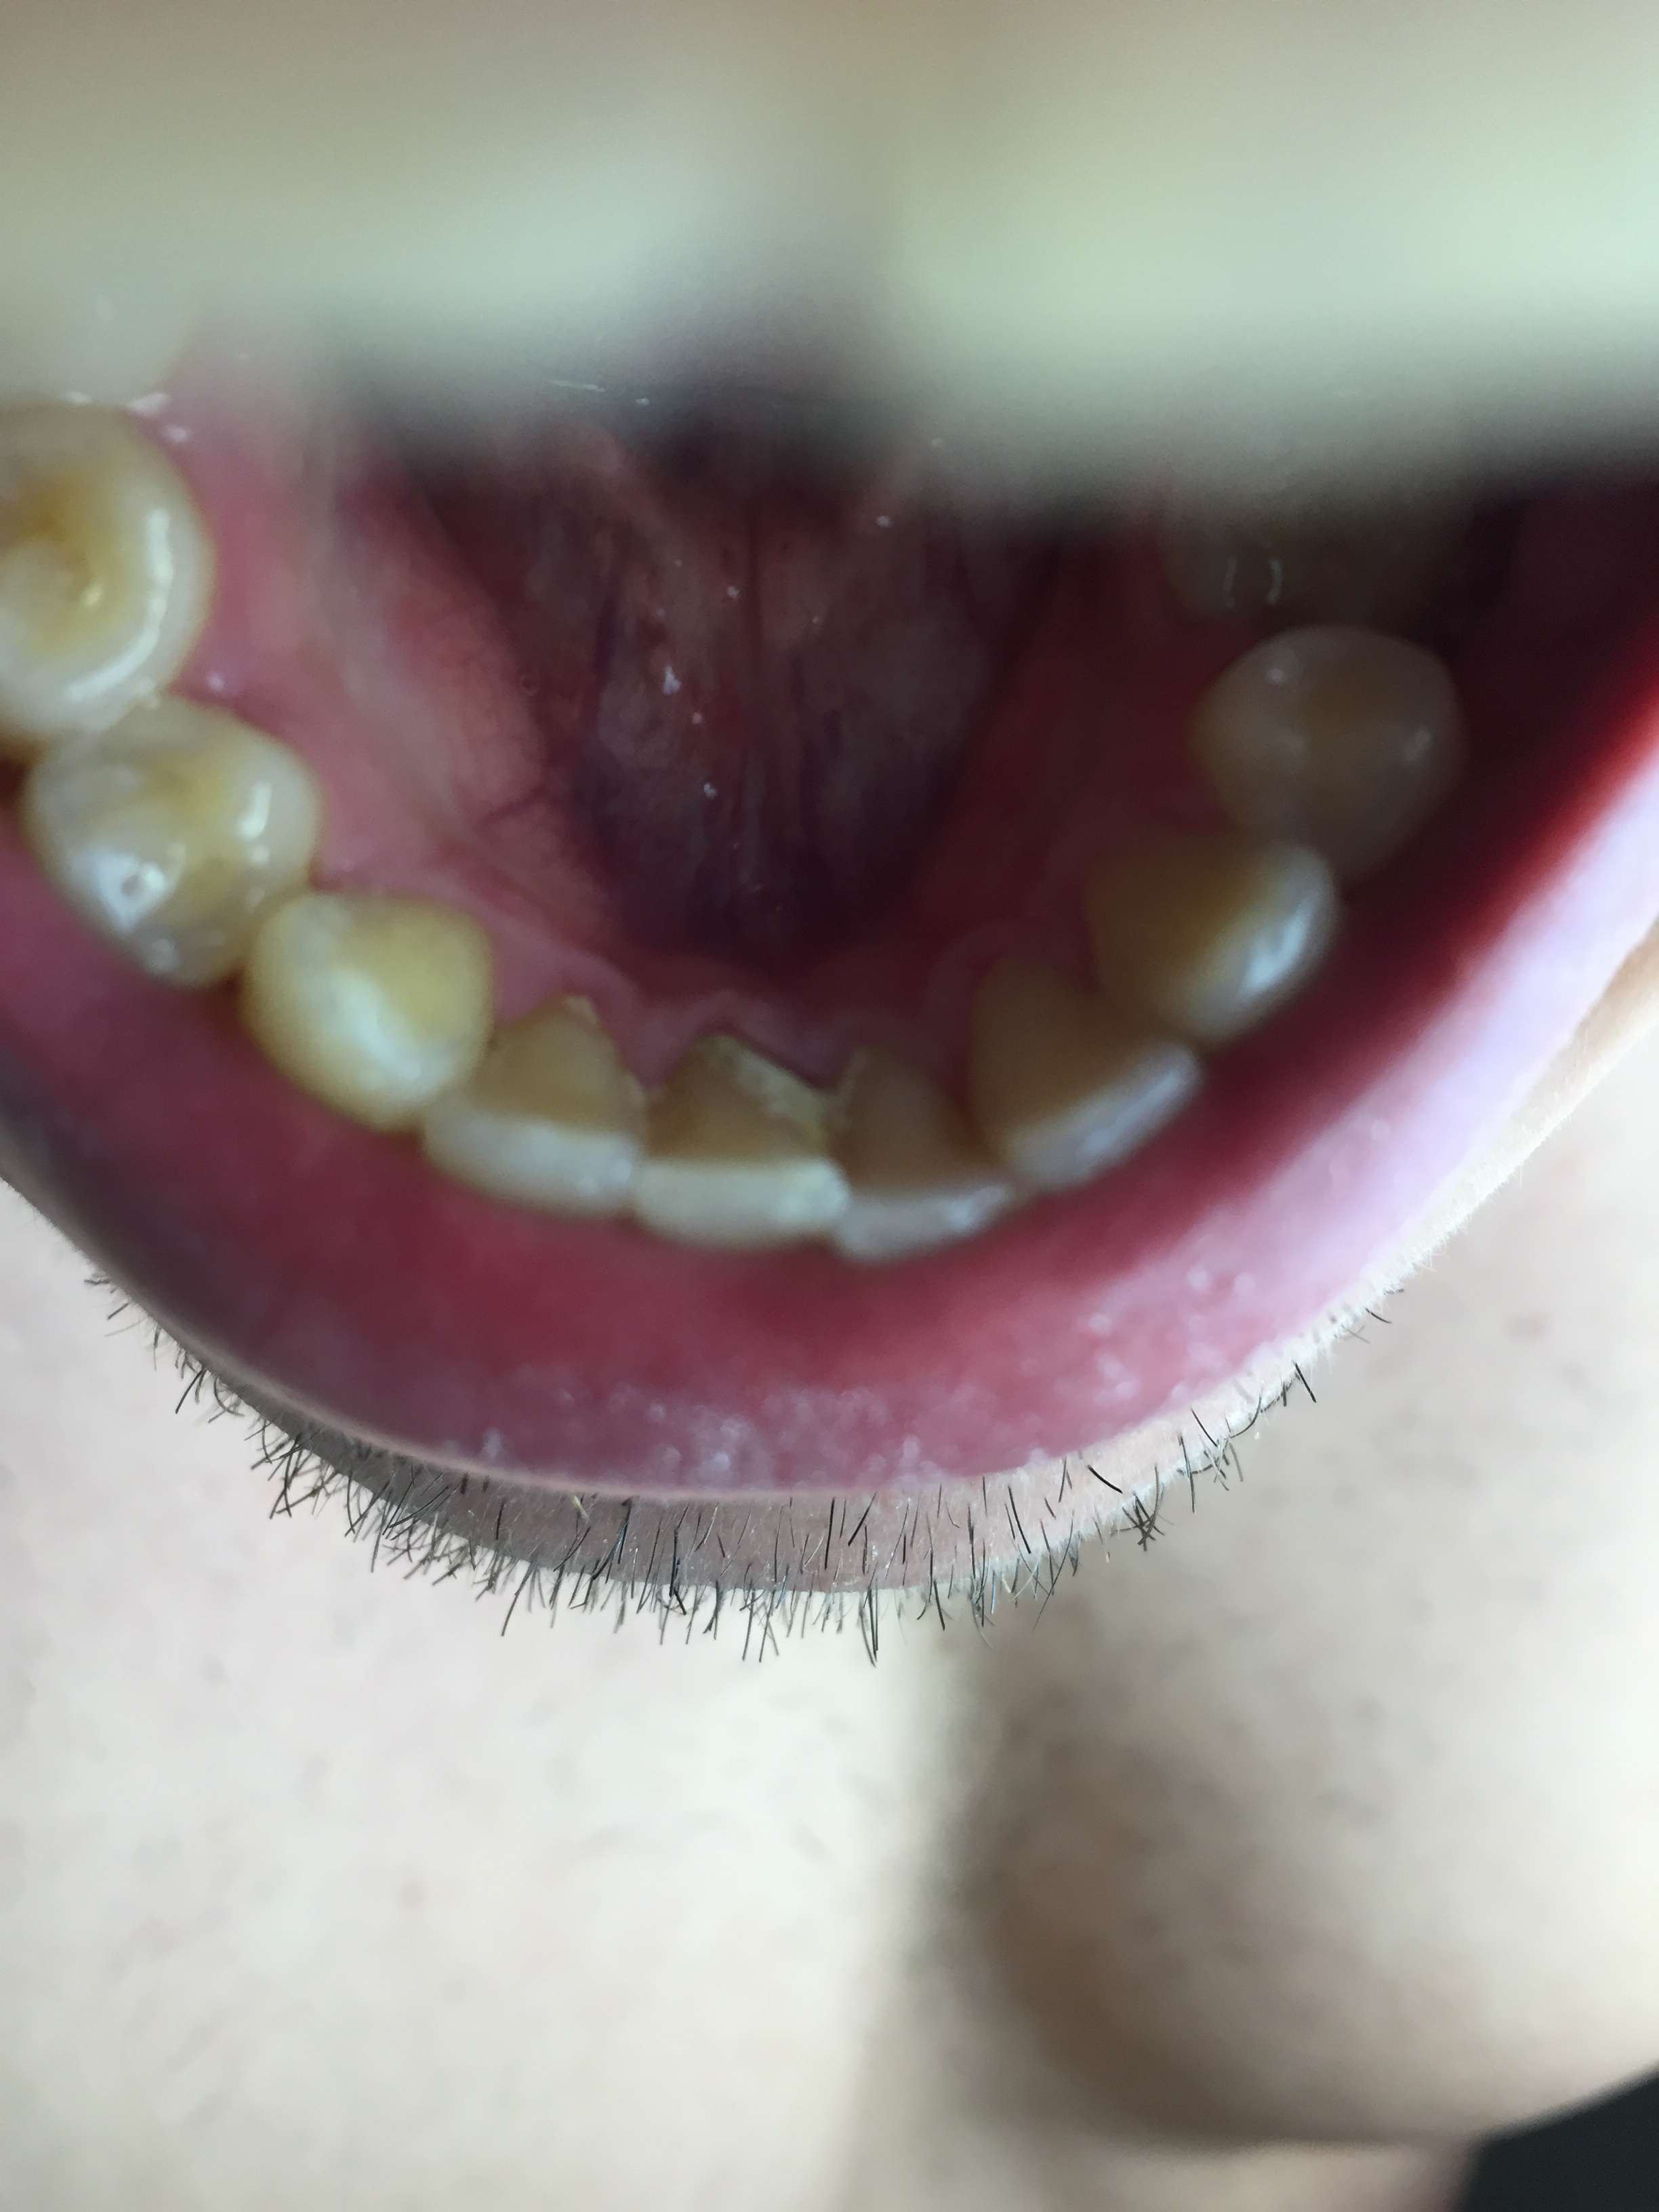 Abgebrochen vom kleines stück zahn Abgebrochener Zahn